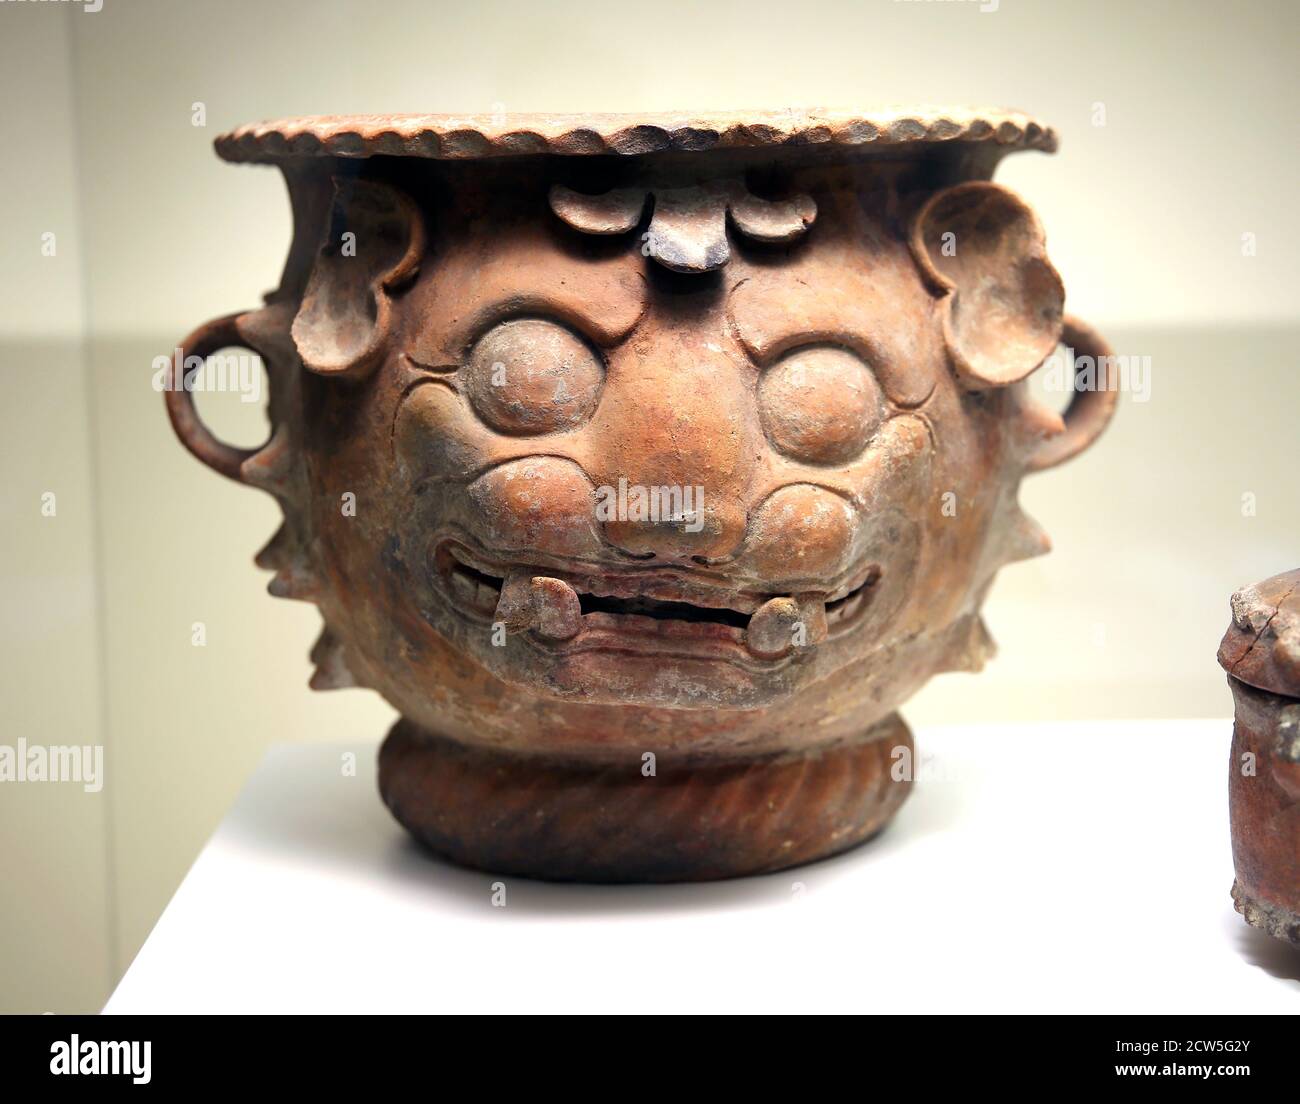 Maneggiato con la testa jaguar. Bruciatore ad incenso. (300-900 d.C.) ceramica di arte maya Pre Columbian. Museo delle culture del mondo, Barcellona. Foto Stock